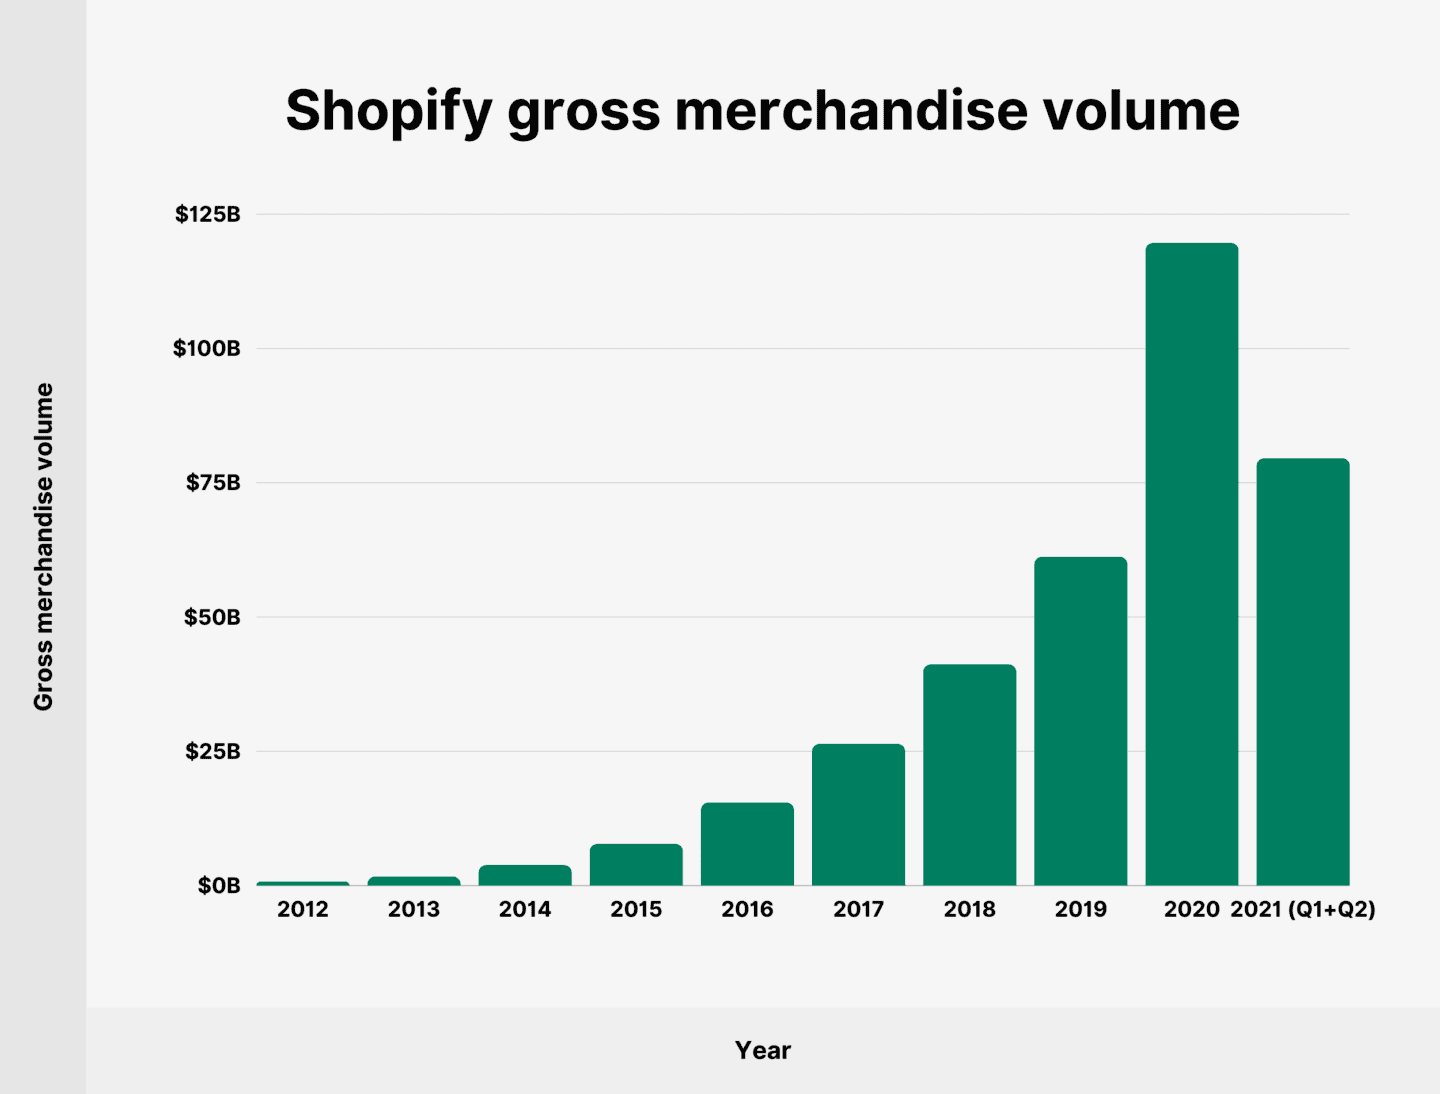 O valor bruto da mercadoria do Shopify em 2021 foi de 79,5 bilhões